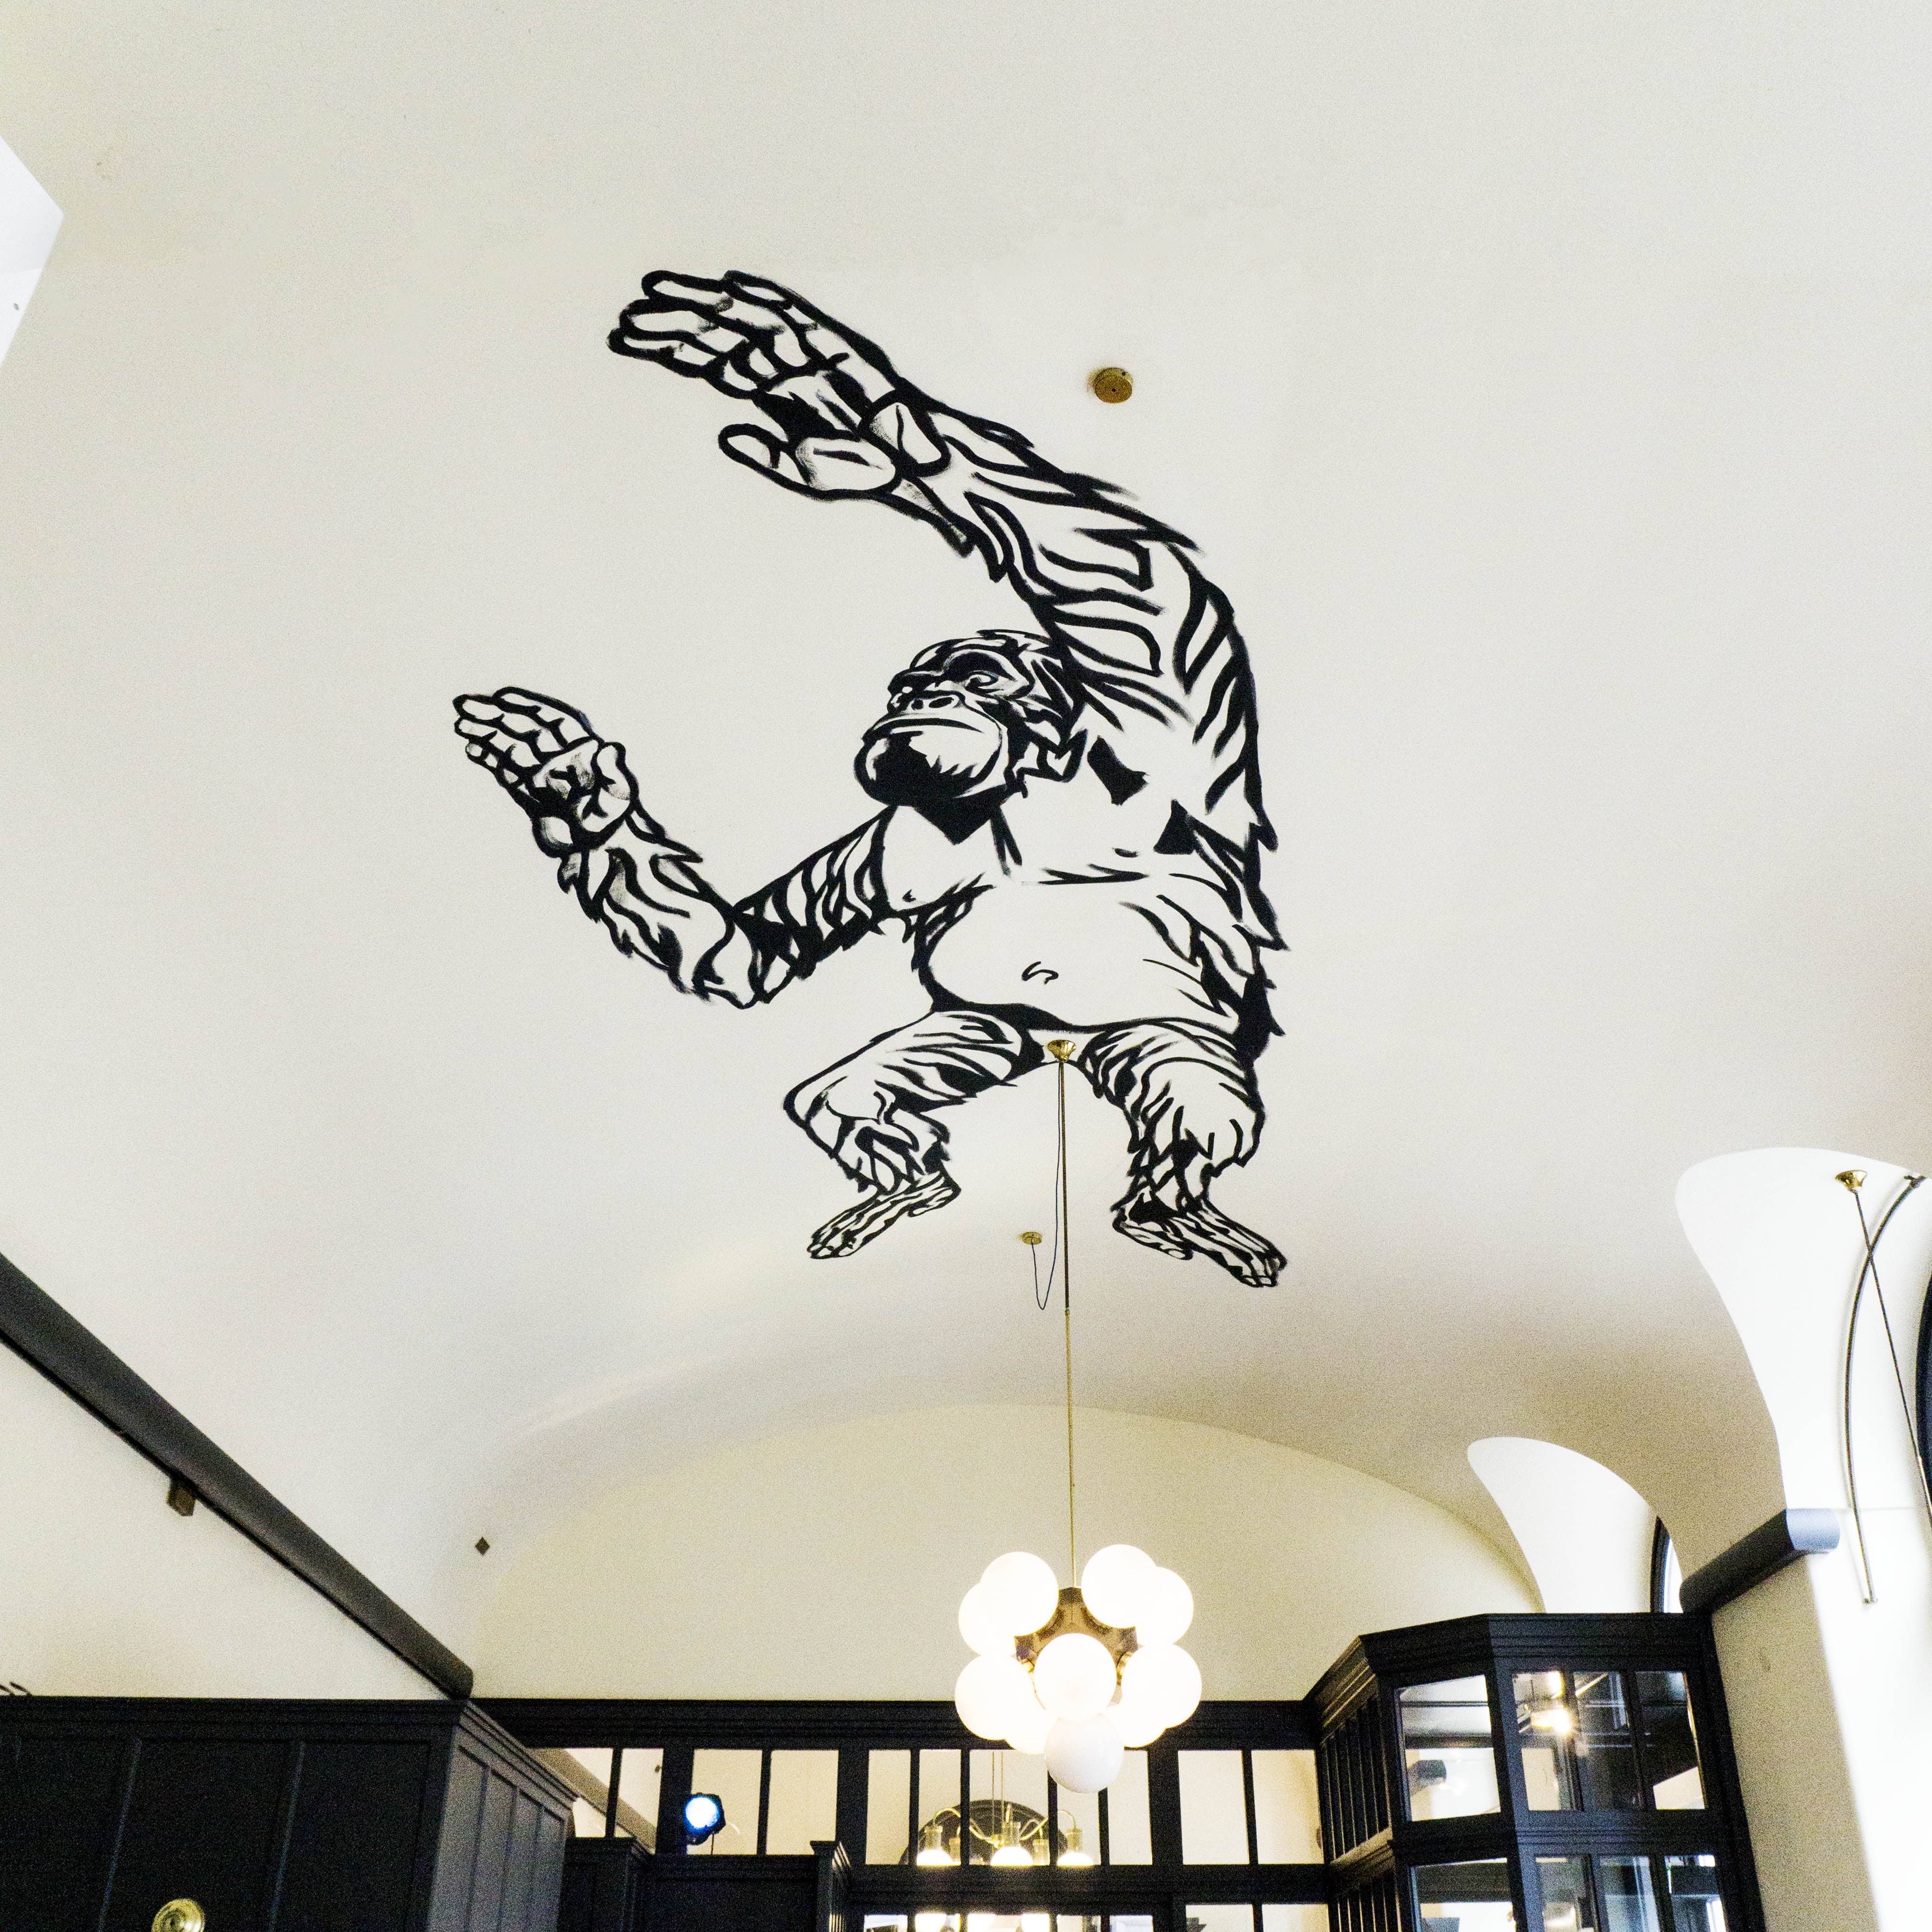 ceiling mural of a gorilla at rien / Cafe Griensteidl Vienna by Sascha Vernik / REVKIN